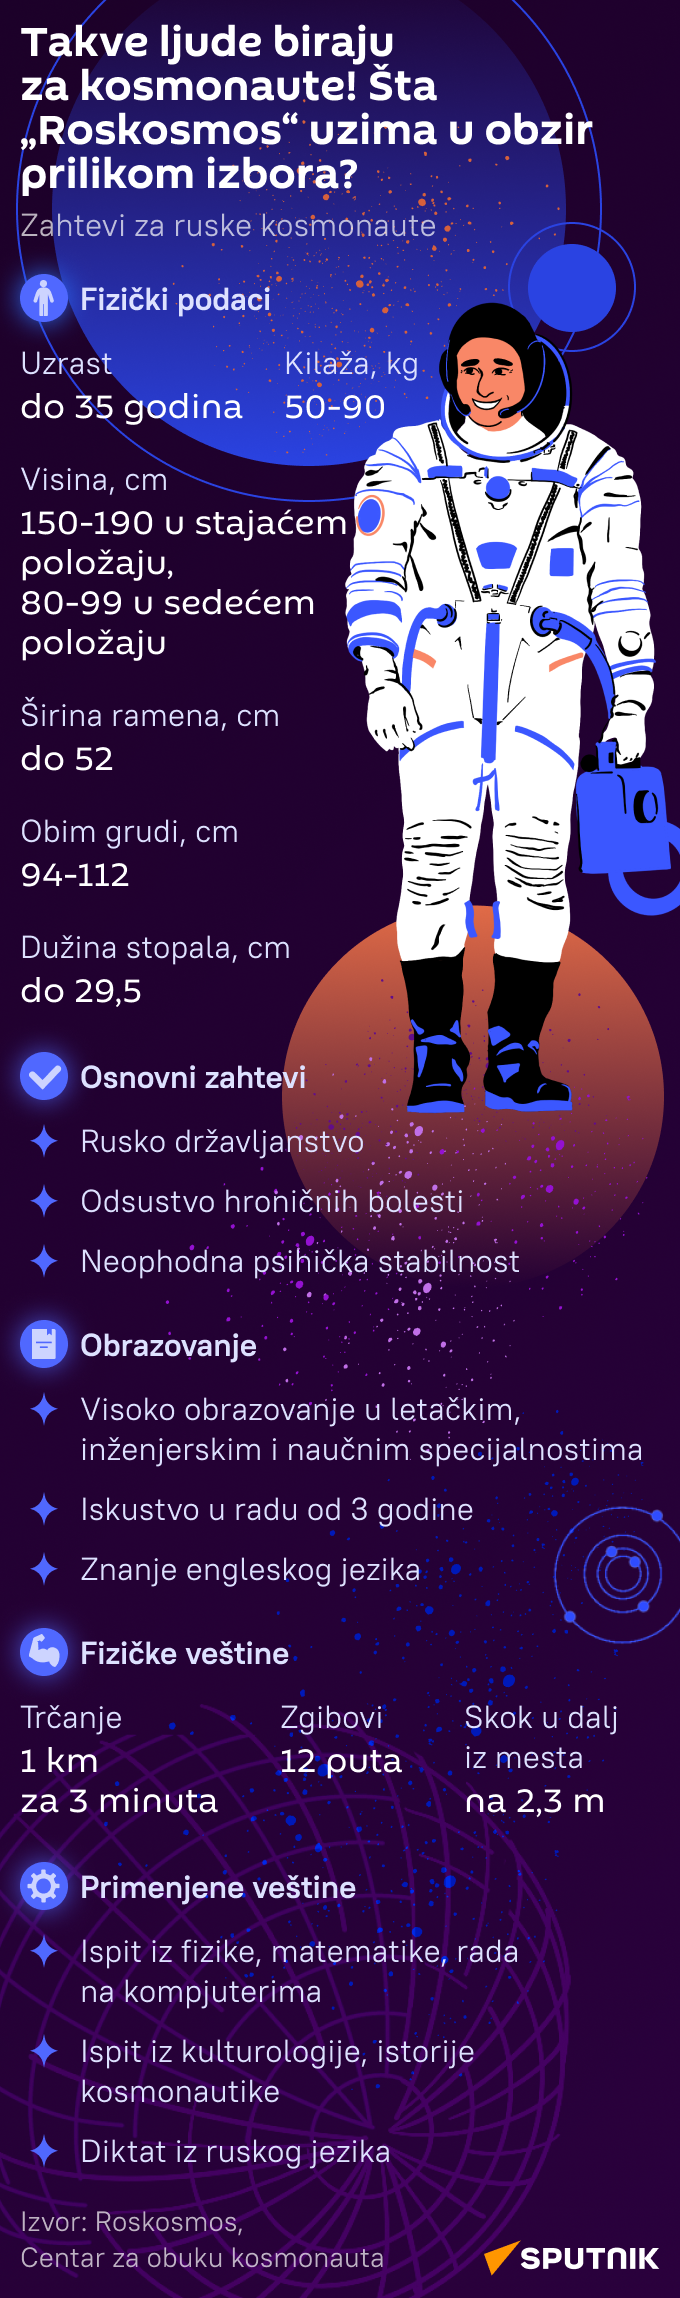 Infografika Takve ljude biraju za kosmonaute LAT mob - Sputnik Srbija